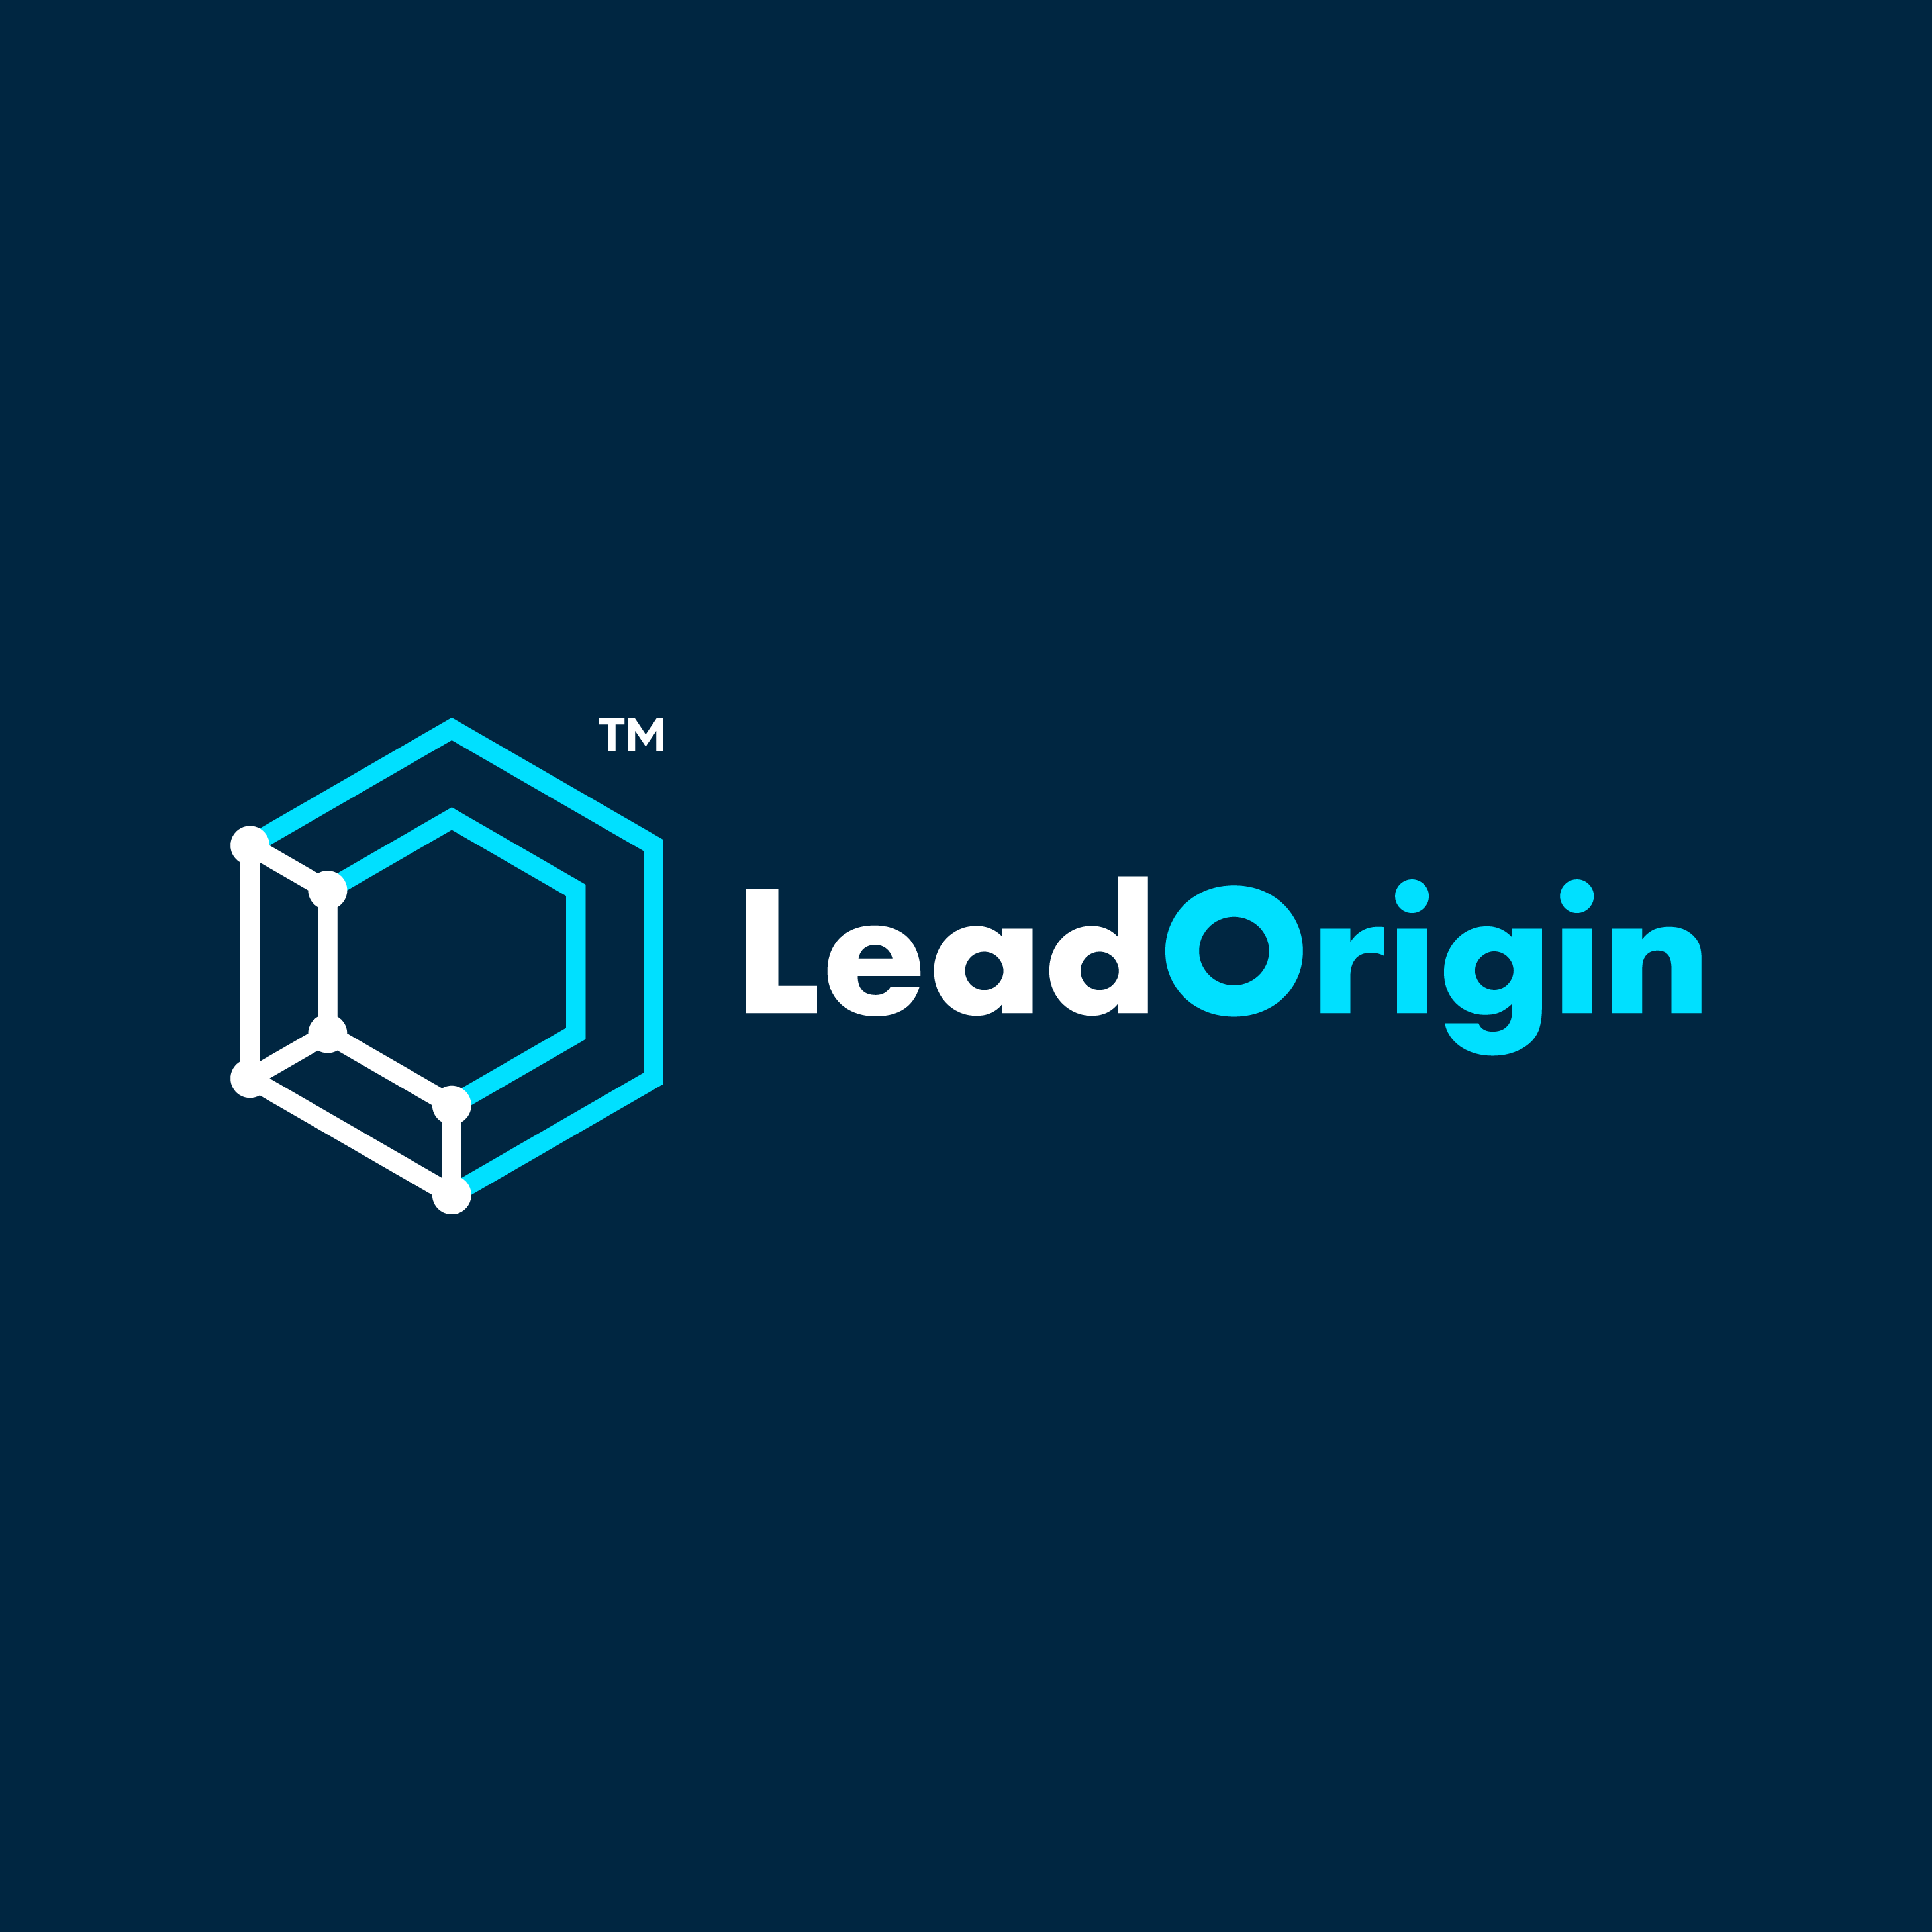 Lead Origin